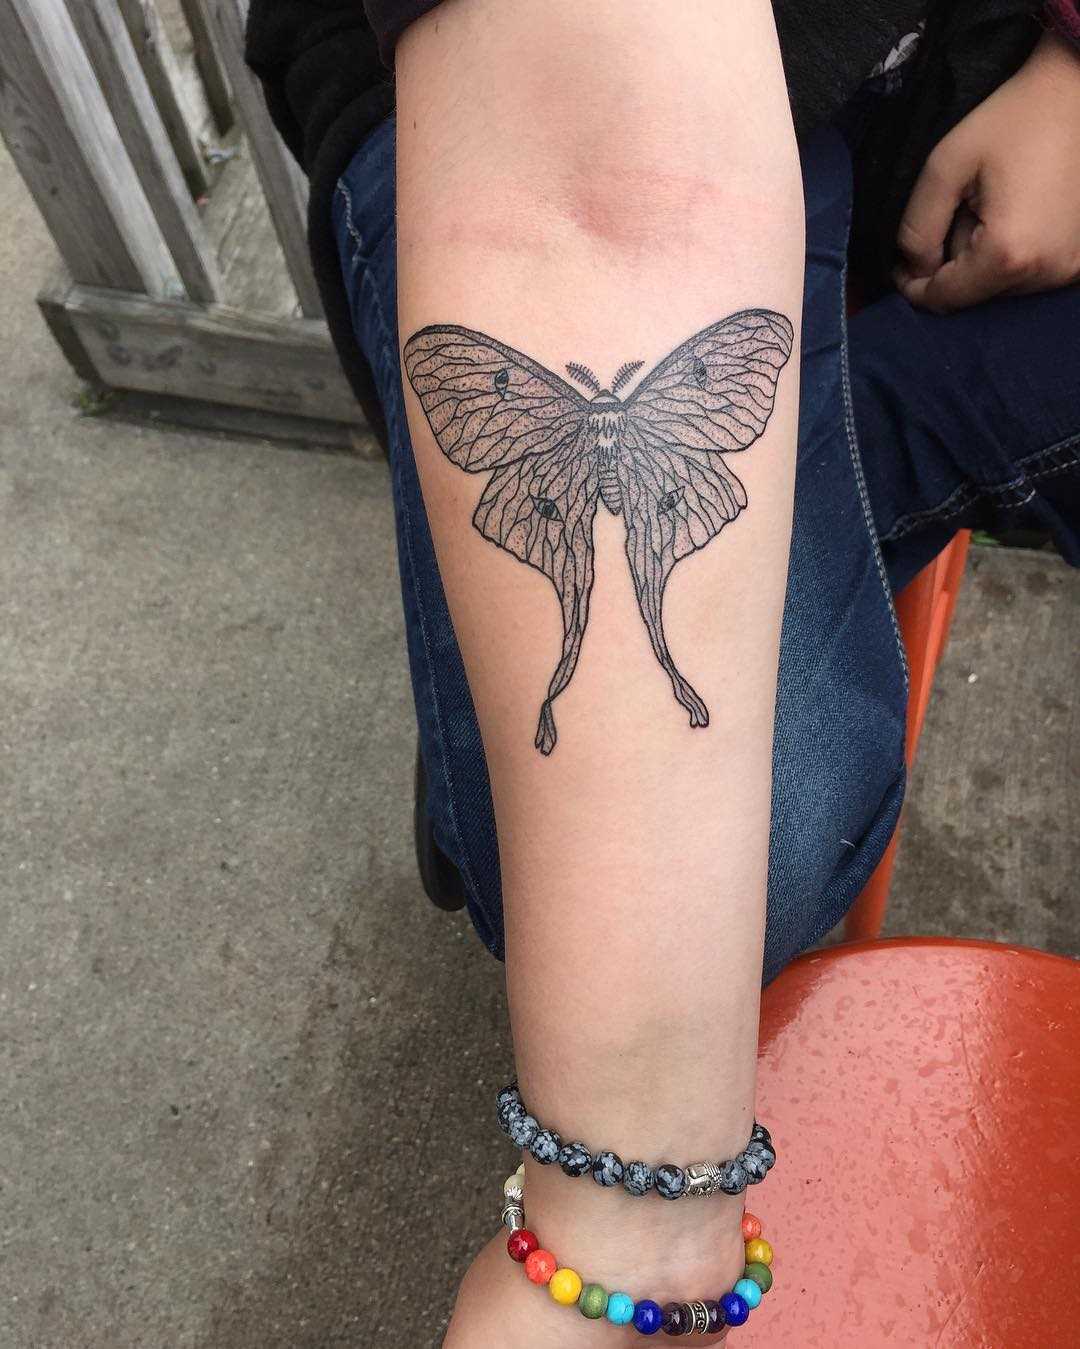 A tatuagem de inseto no antebraço da menina